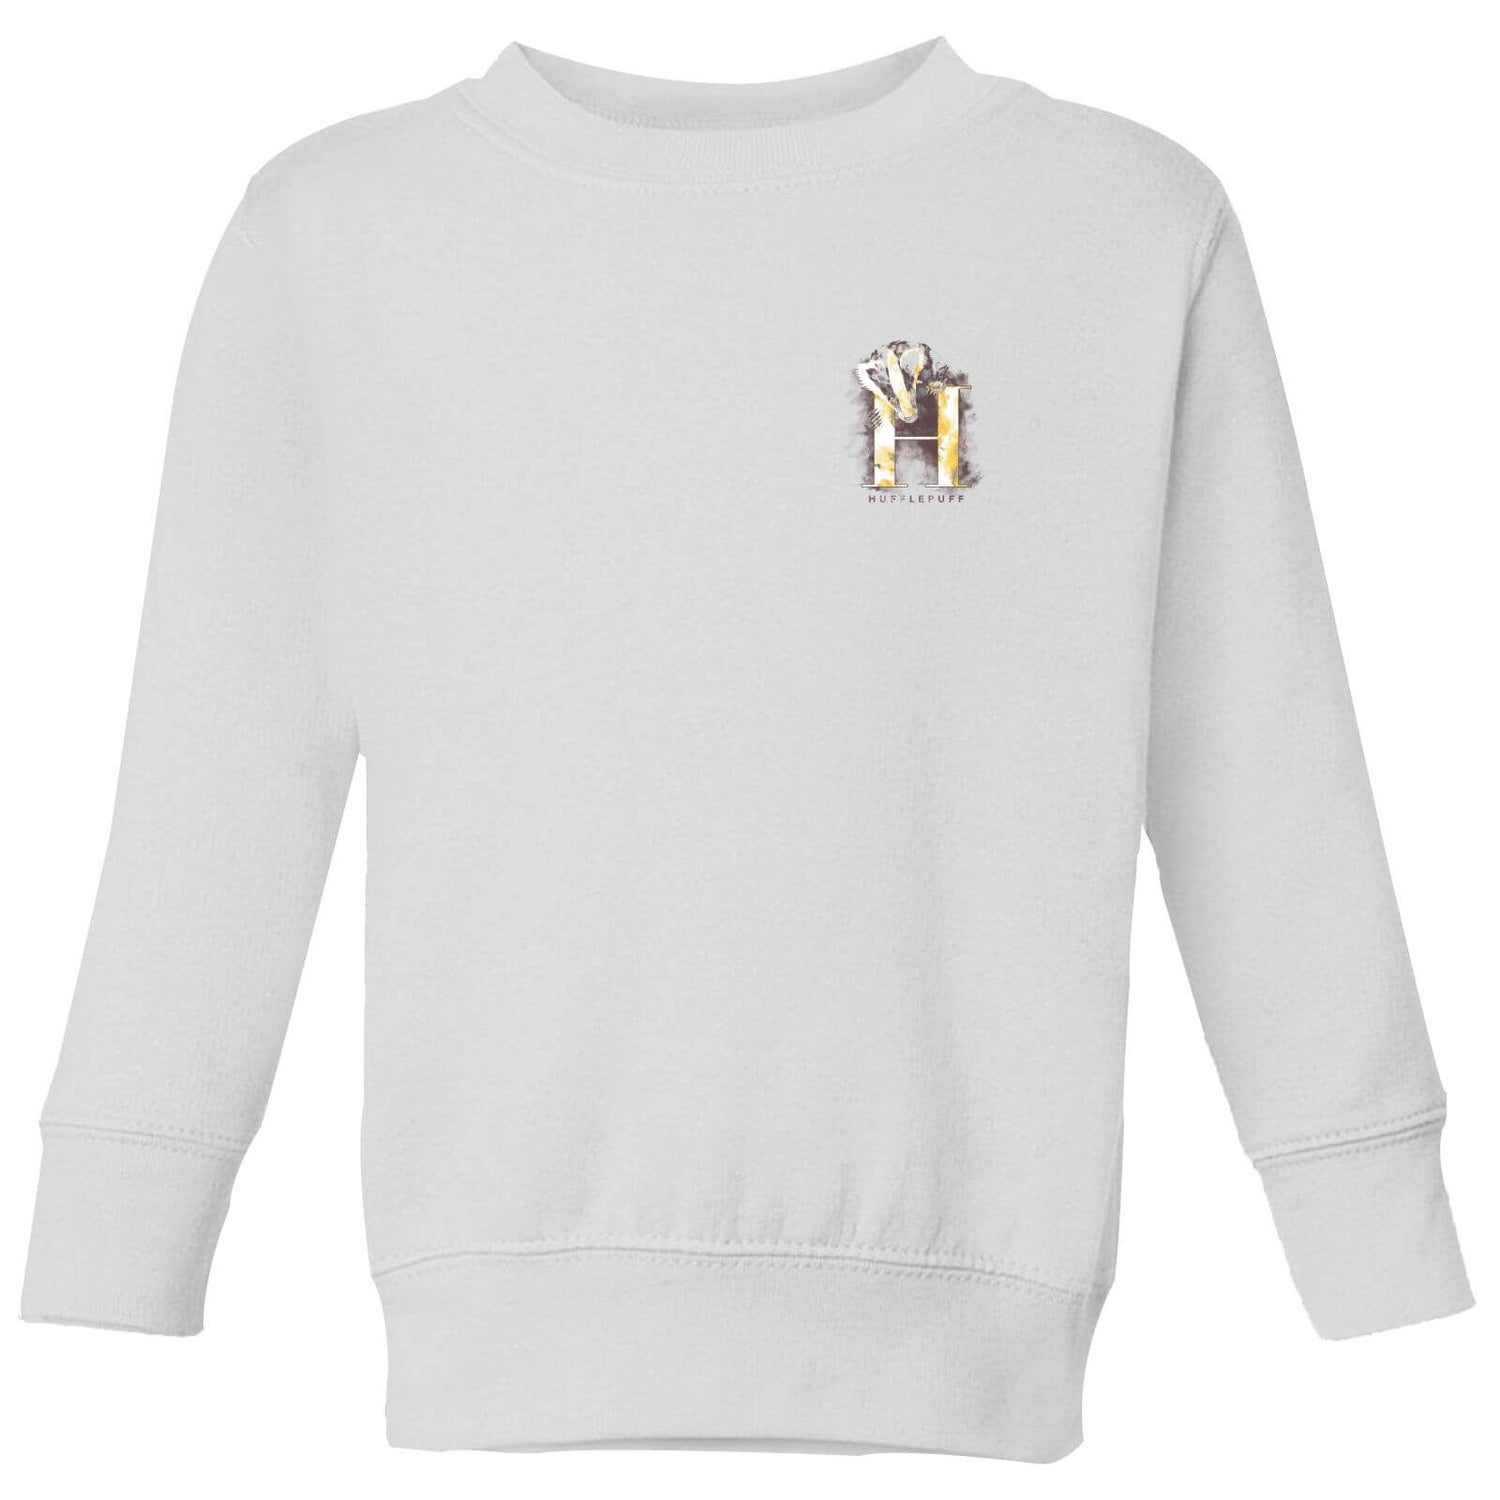 Harry Potter Hufflepuff Kids' Sweatshirt - White